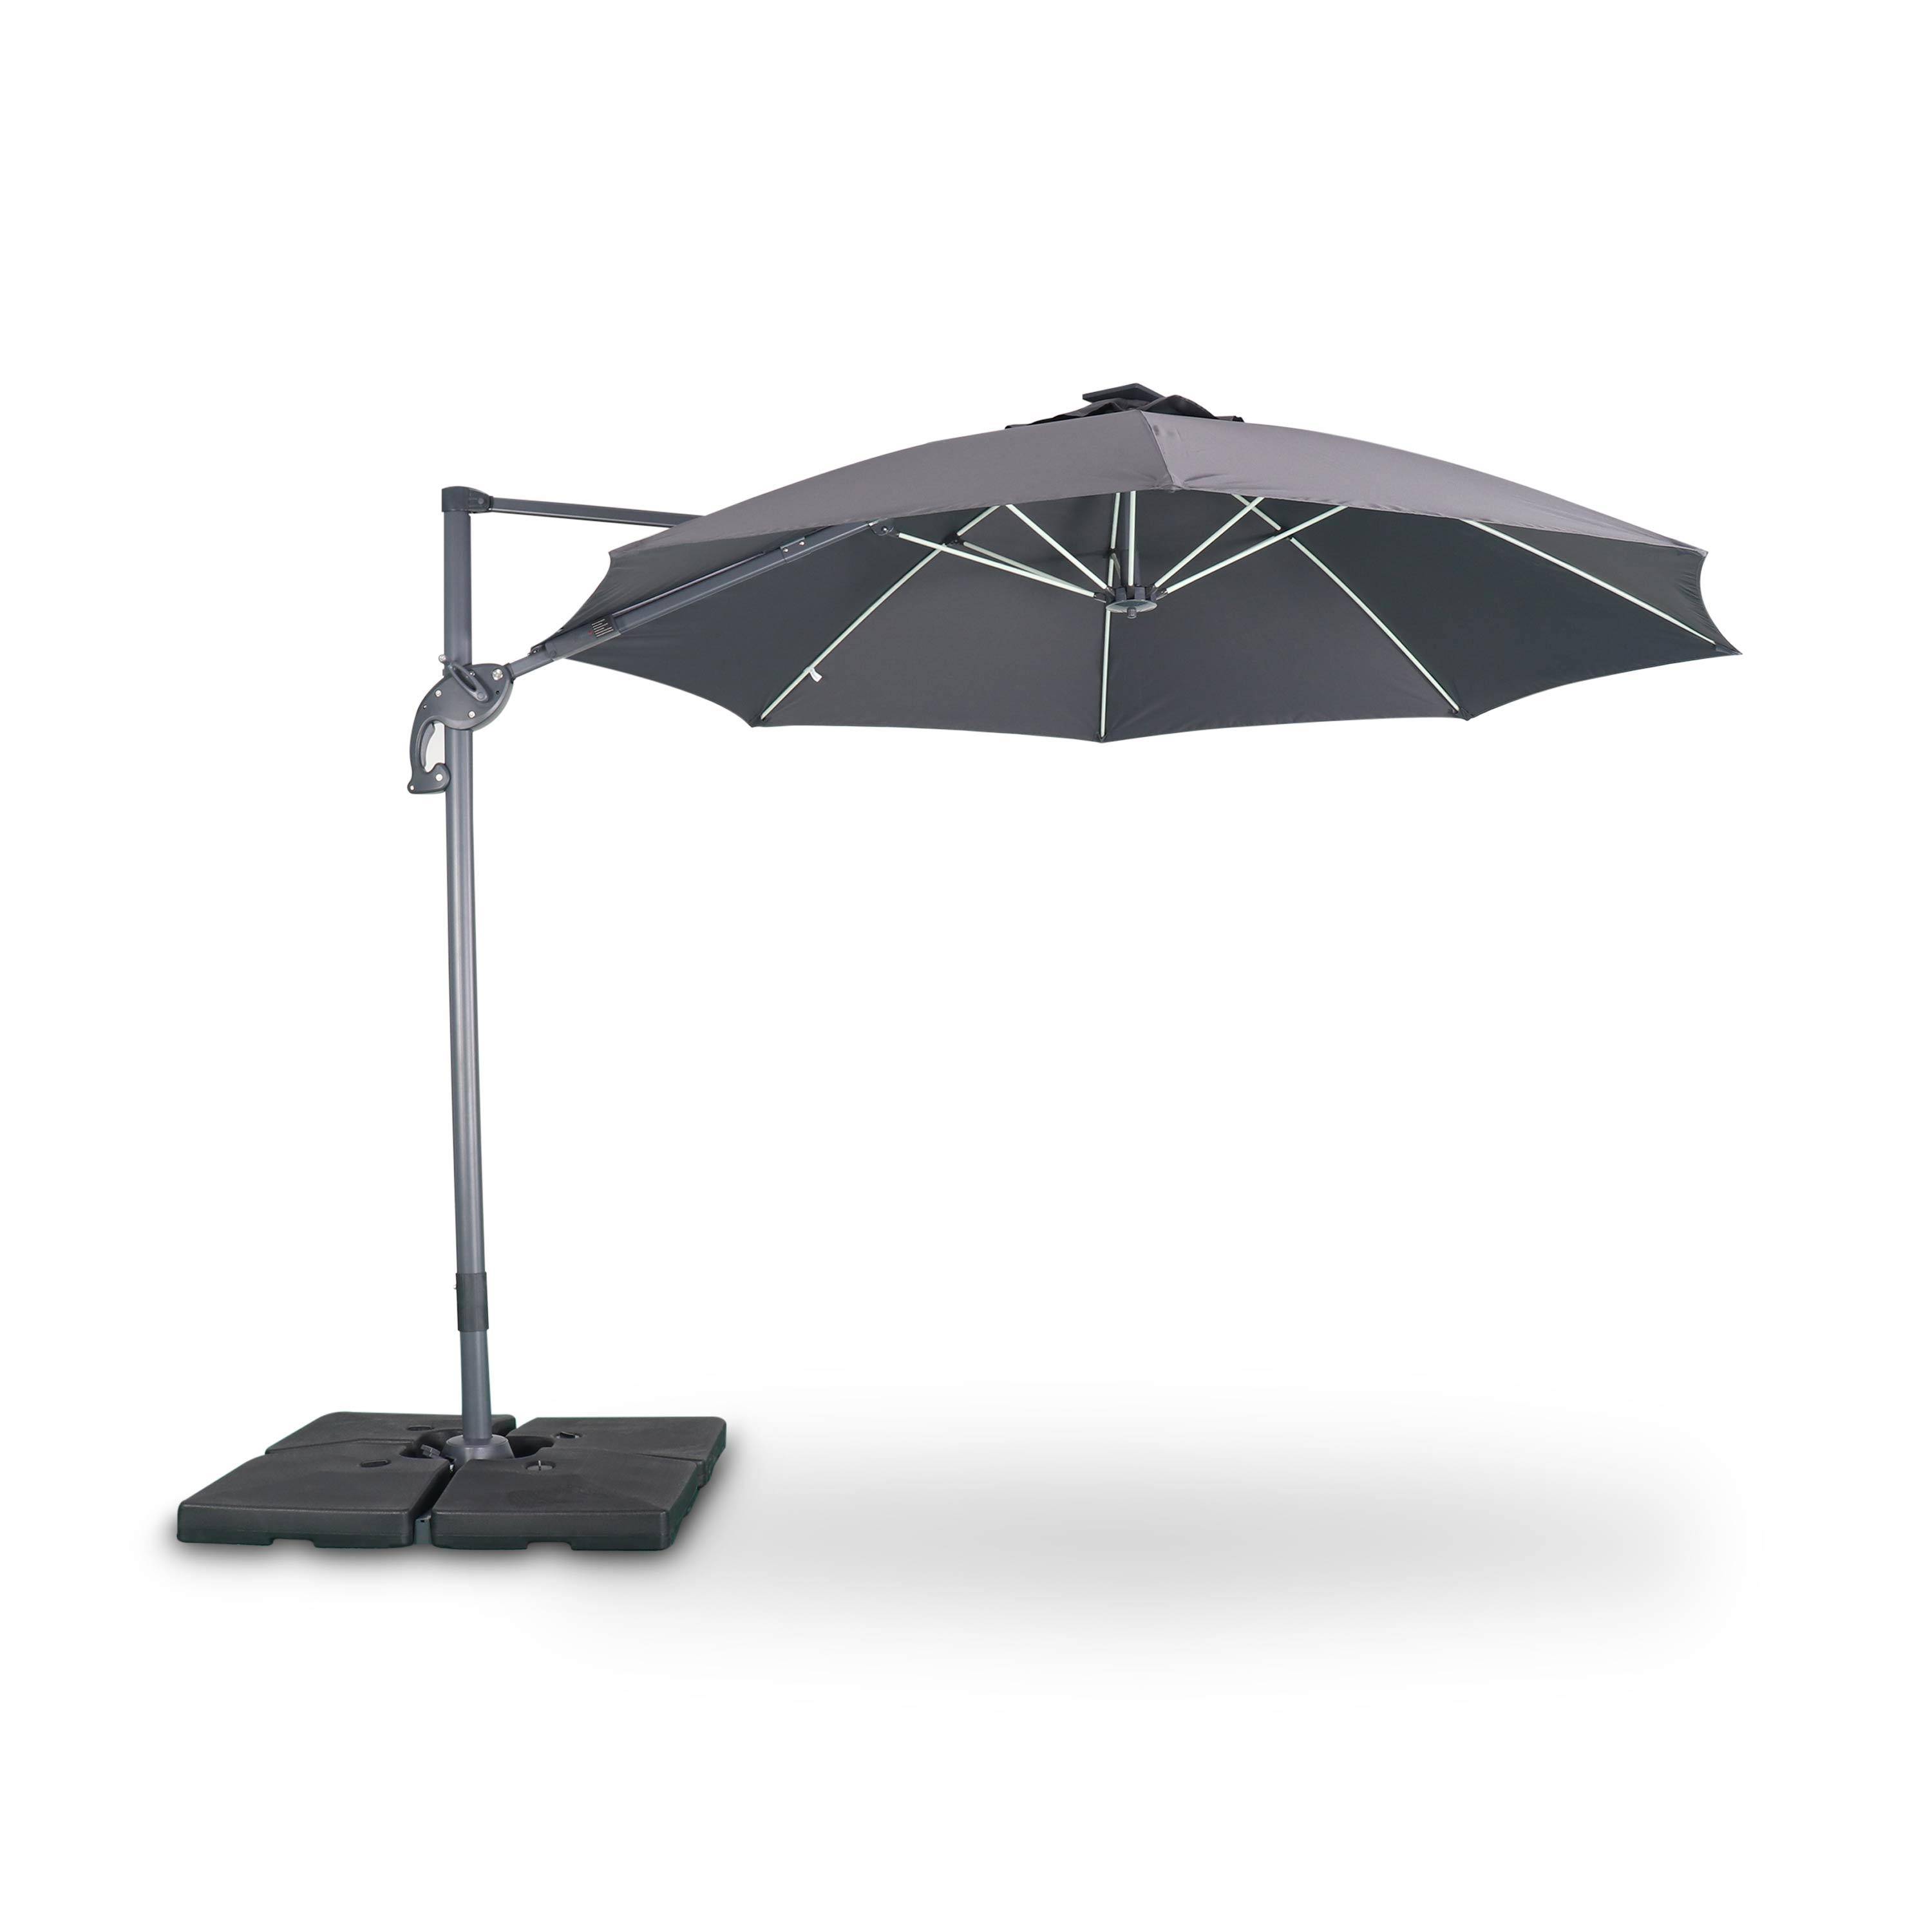 Ombrellone led tondo decentrato Ø300 cm - Dinard - Grigio - ombrellone decentrato, basculante, ribaltabile e girevole 360°, stecche in fibra di vetro Photo1